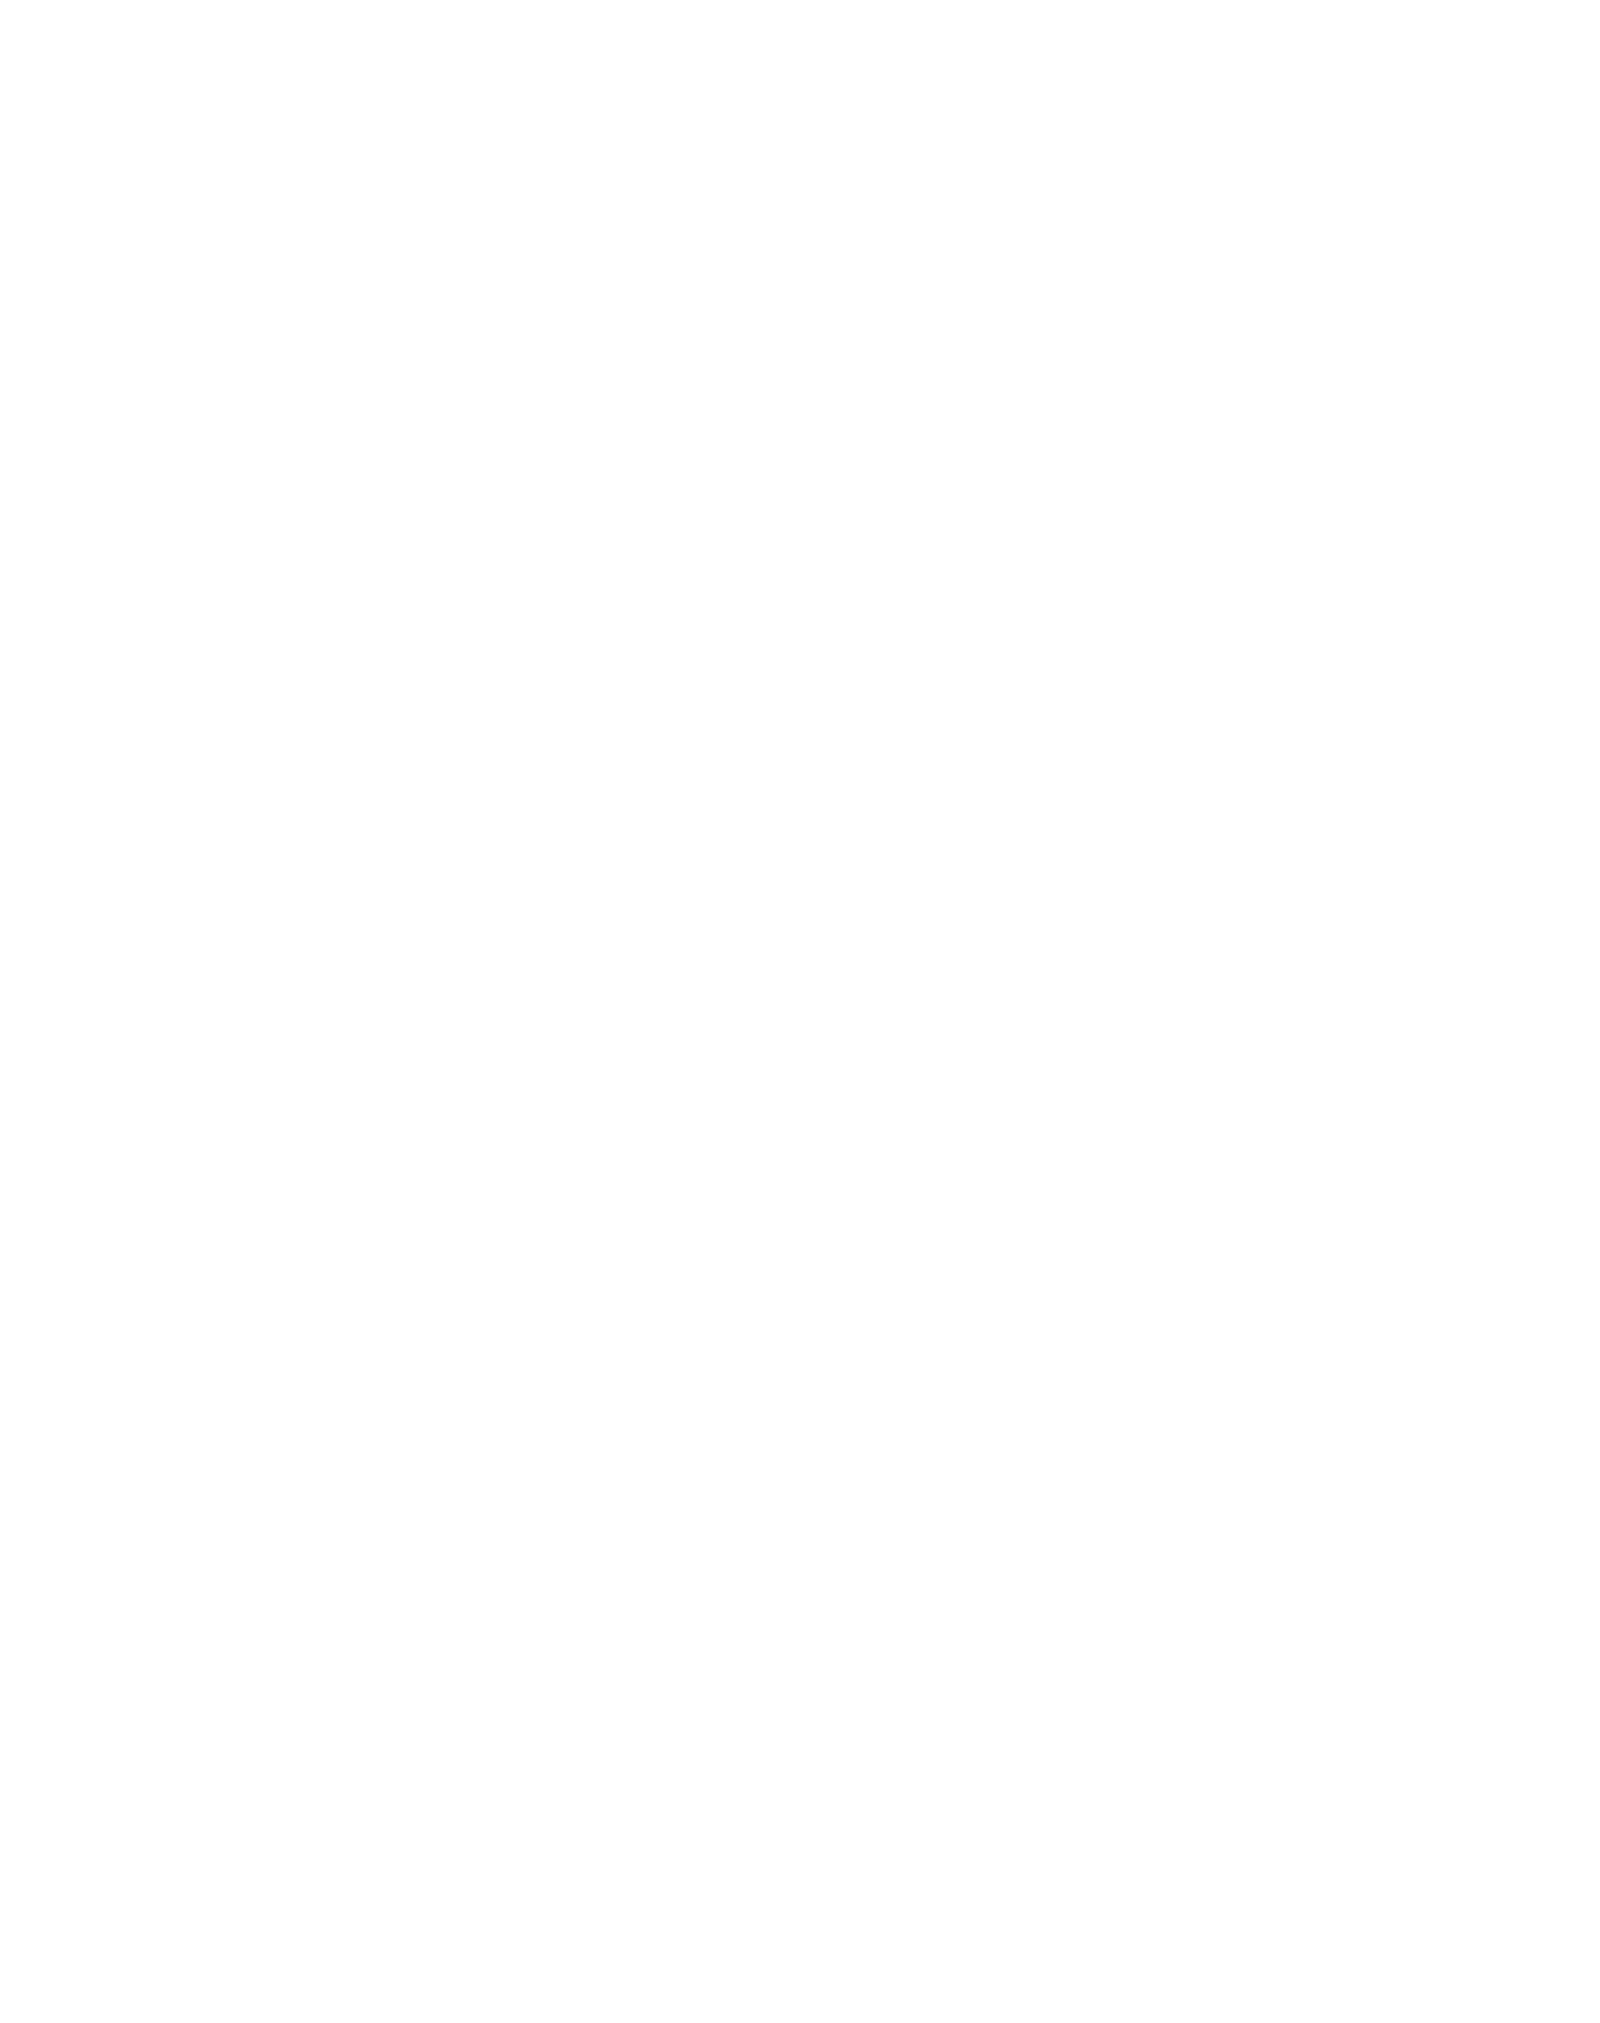 Assassins Creed Unity logo imagen Transparente